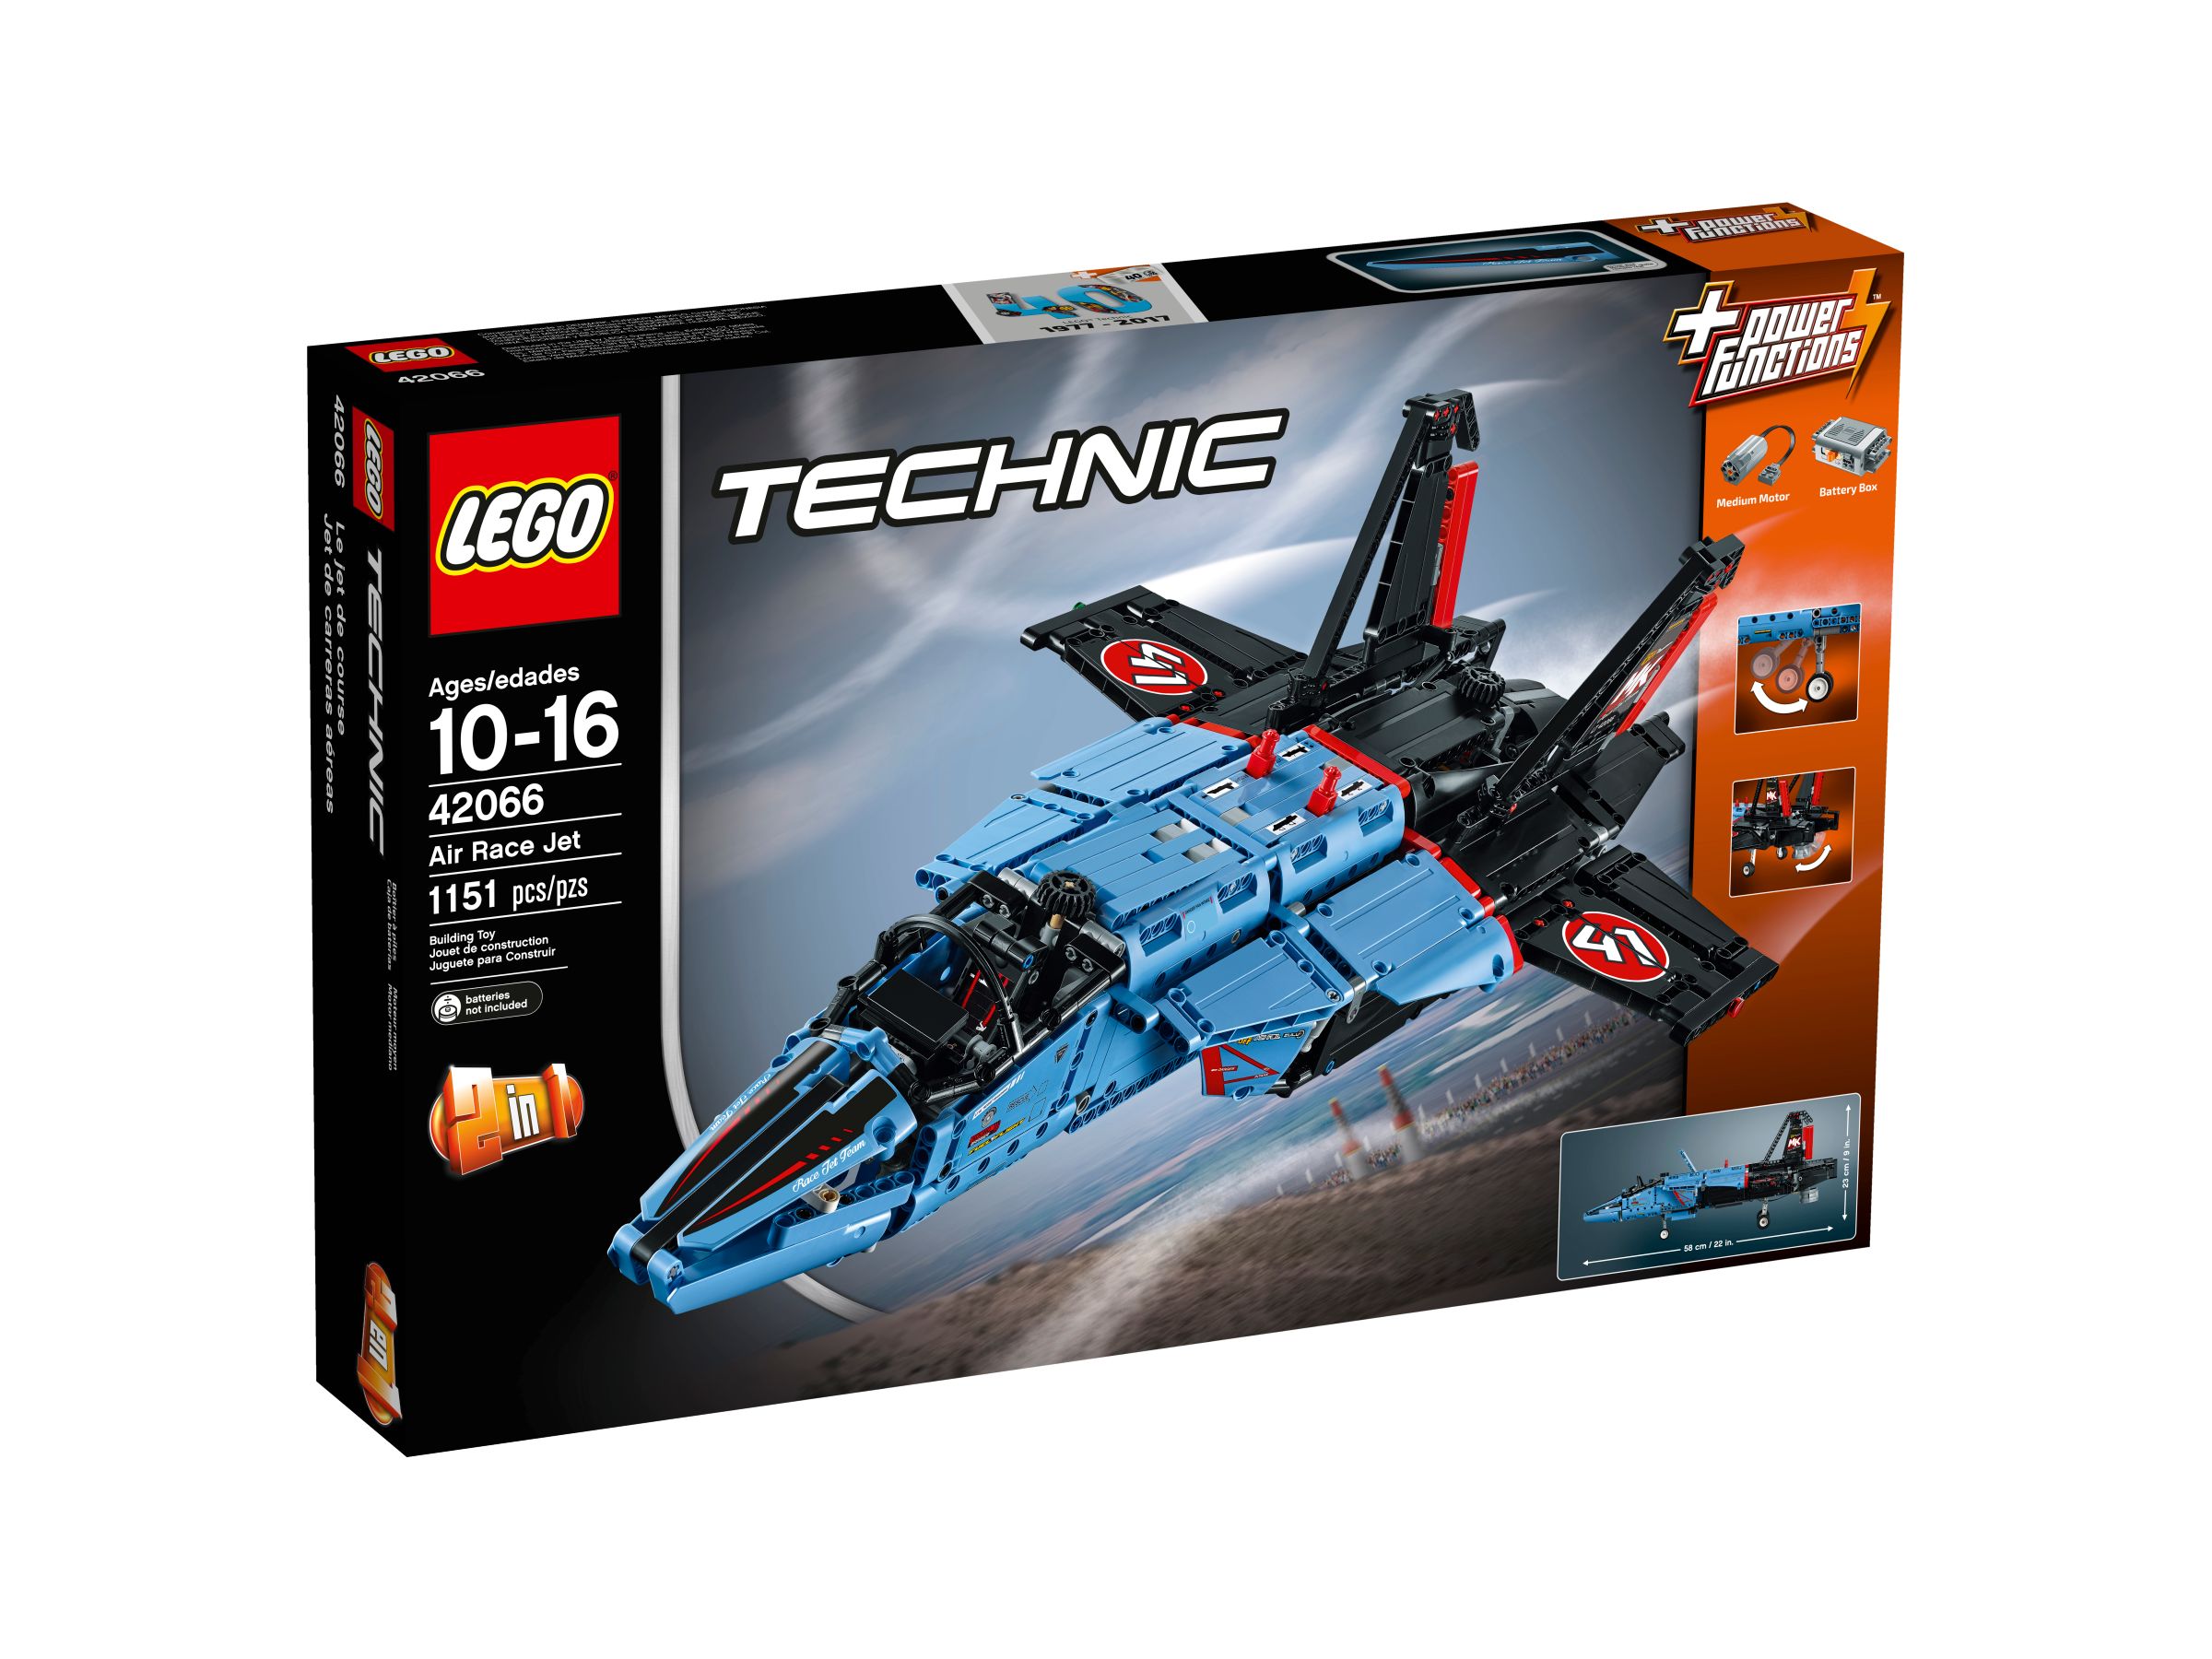 LEGO Technic 42066 Air Race Jet LEGO_42066_alt1.jpg